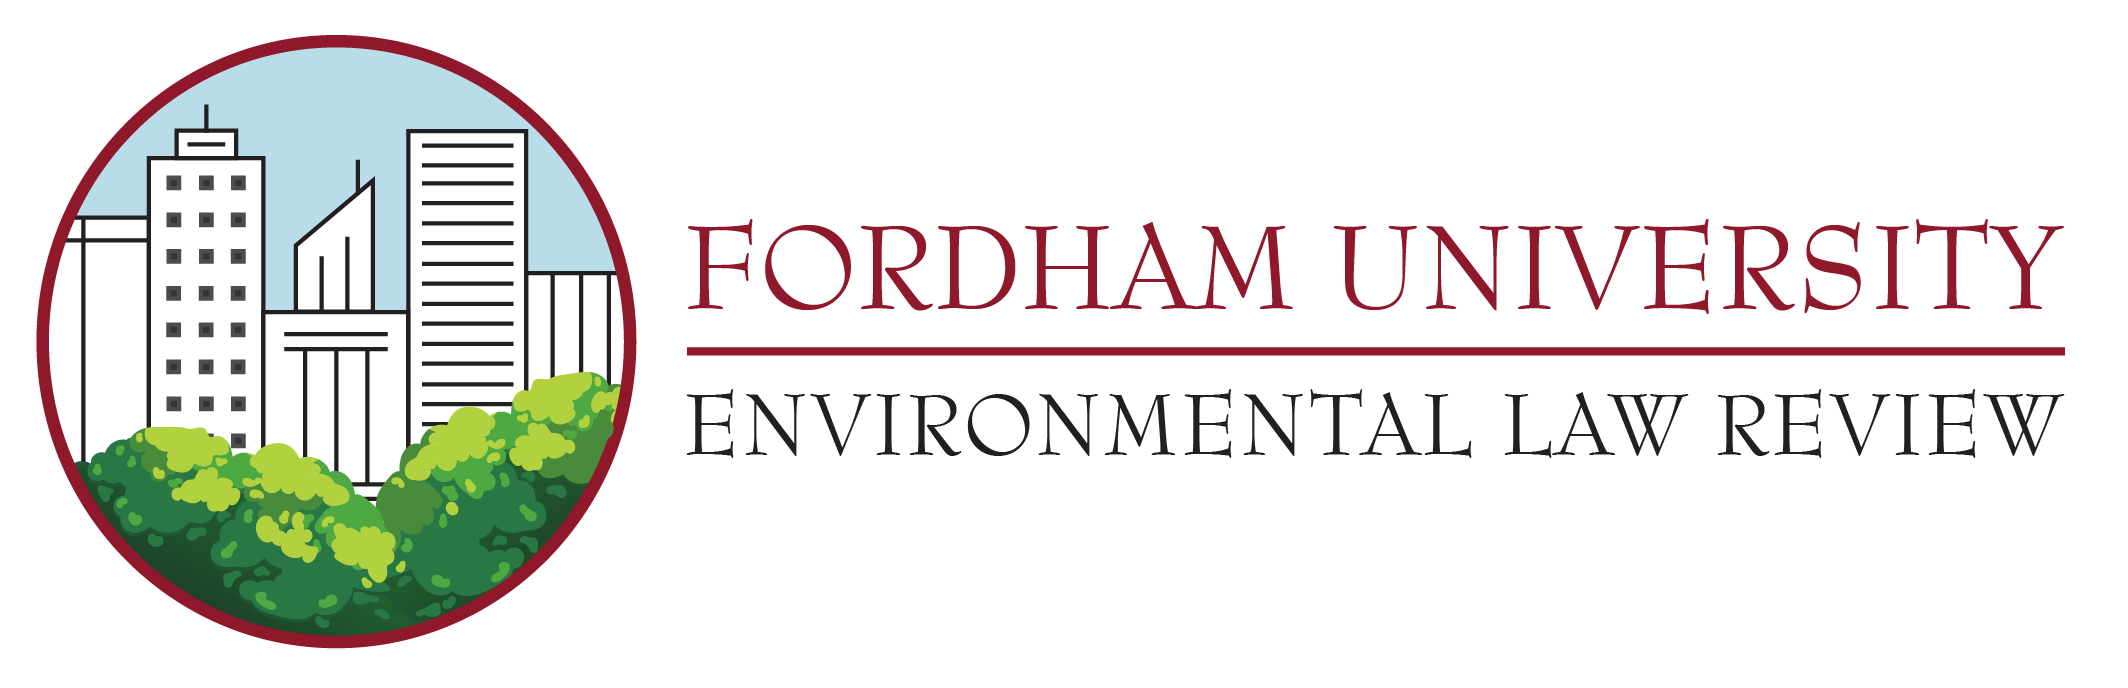 Fordham Environmental Law Review